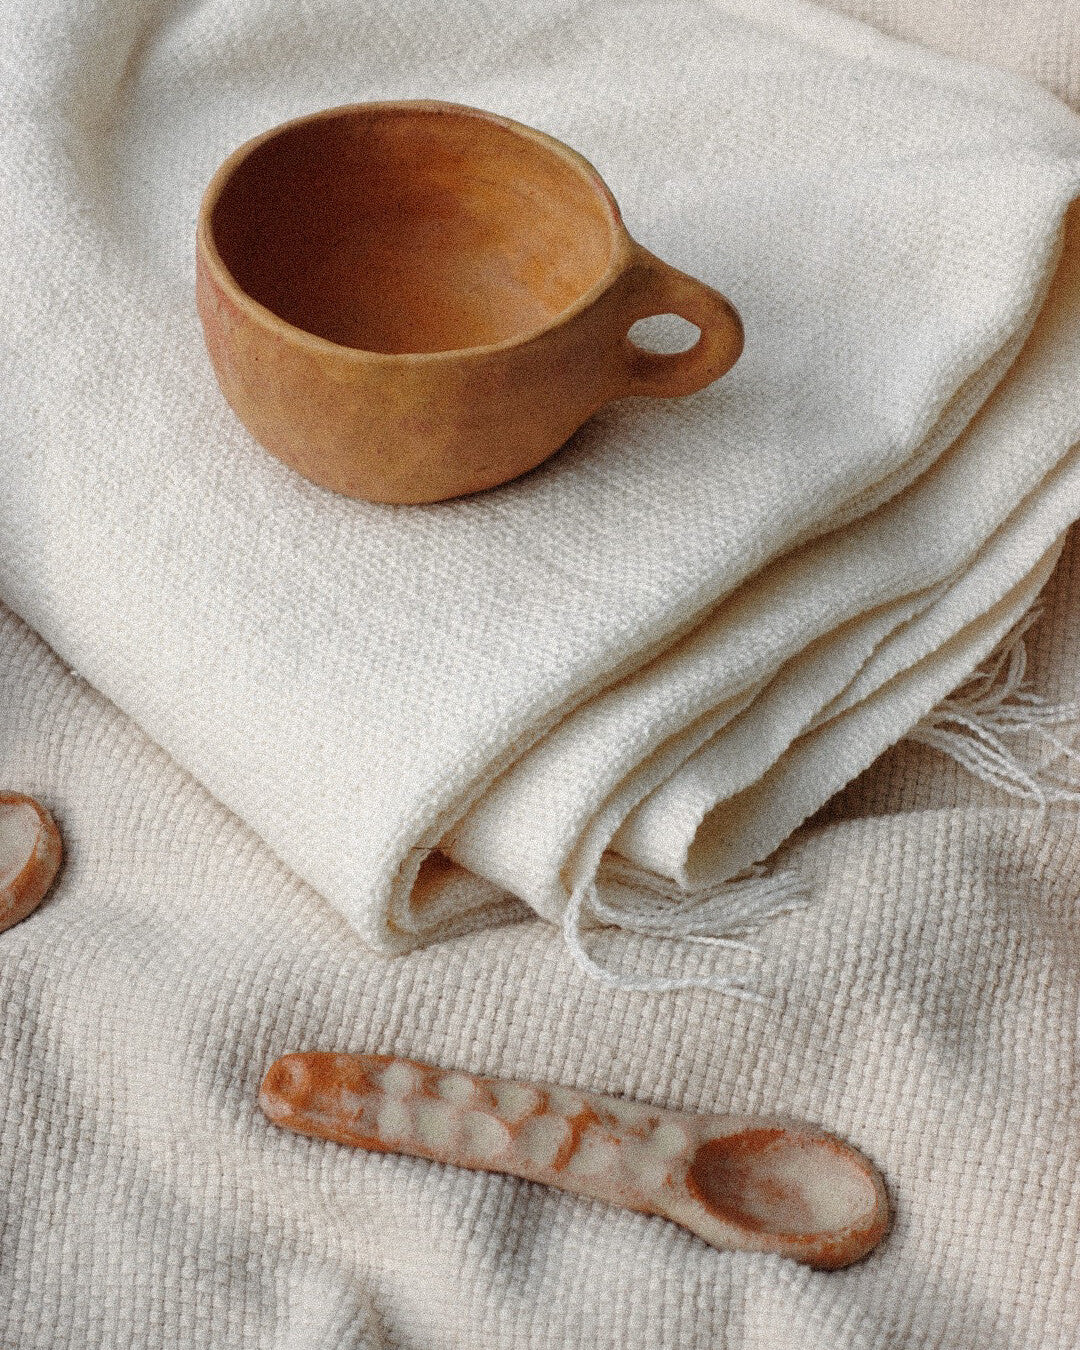 Studio Pepa - Handmade ceramic mug coffee